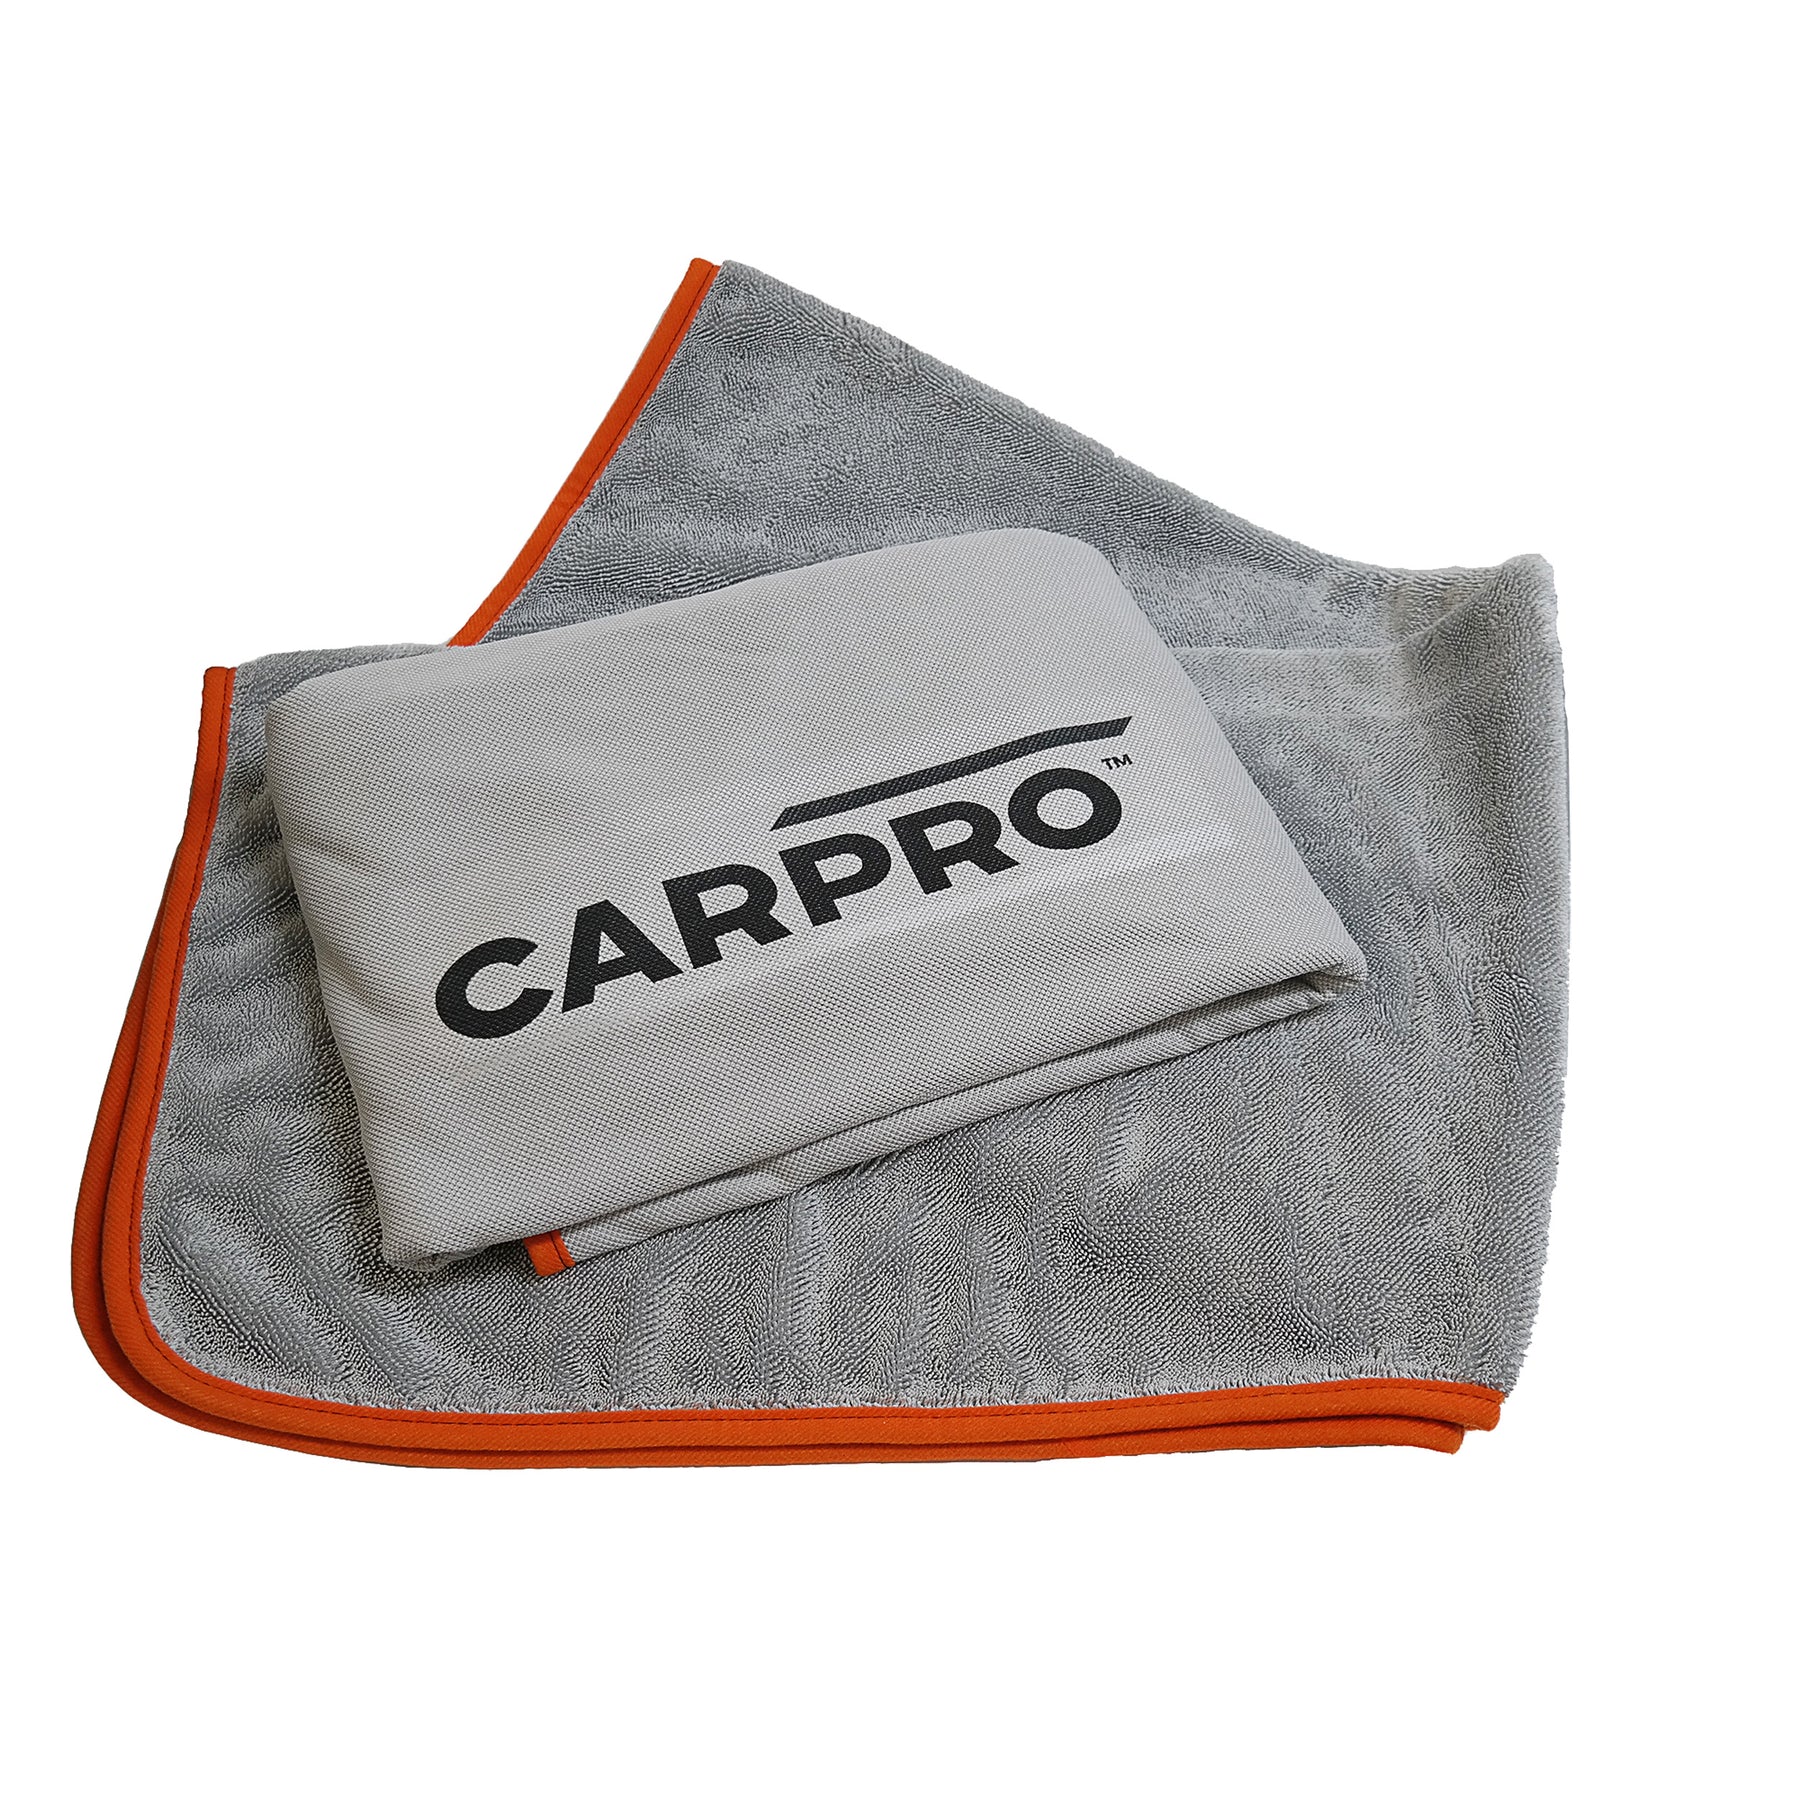 Carpro Kit Accessori Lavaggio Auto